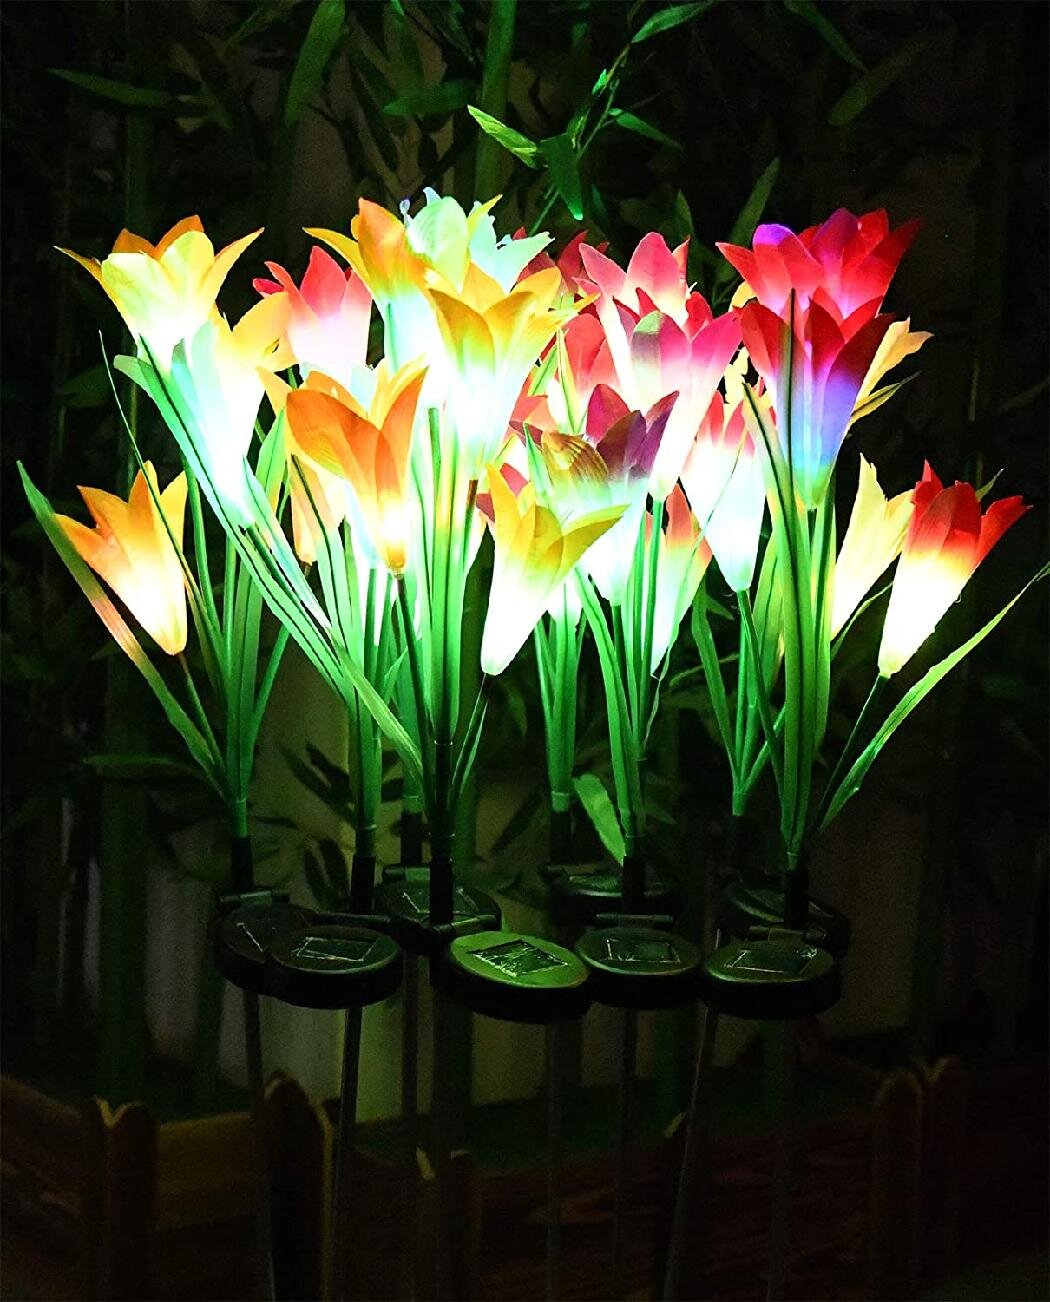 Solar Garden Lights Lily Rose Sunflower Flower LED Stake Lamp Yard Outdoor Decor 